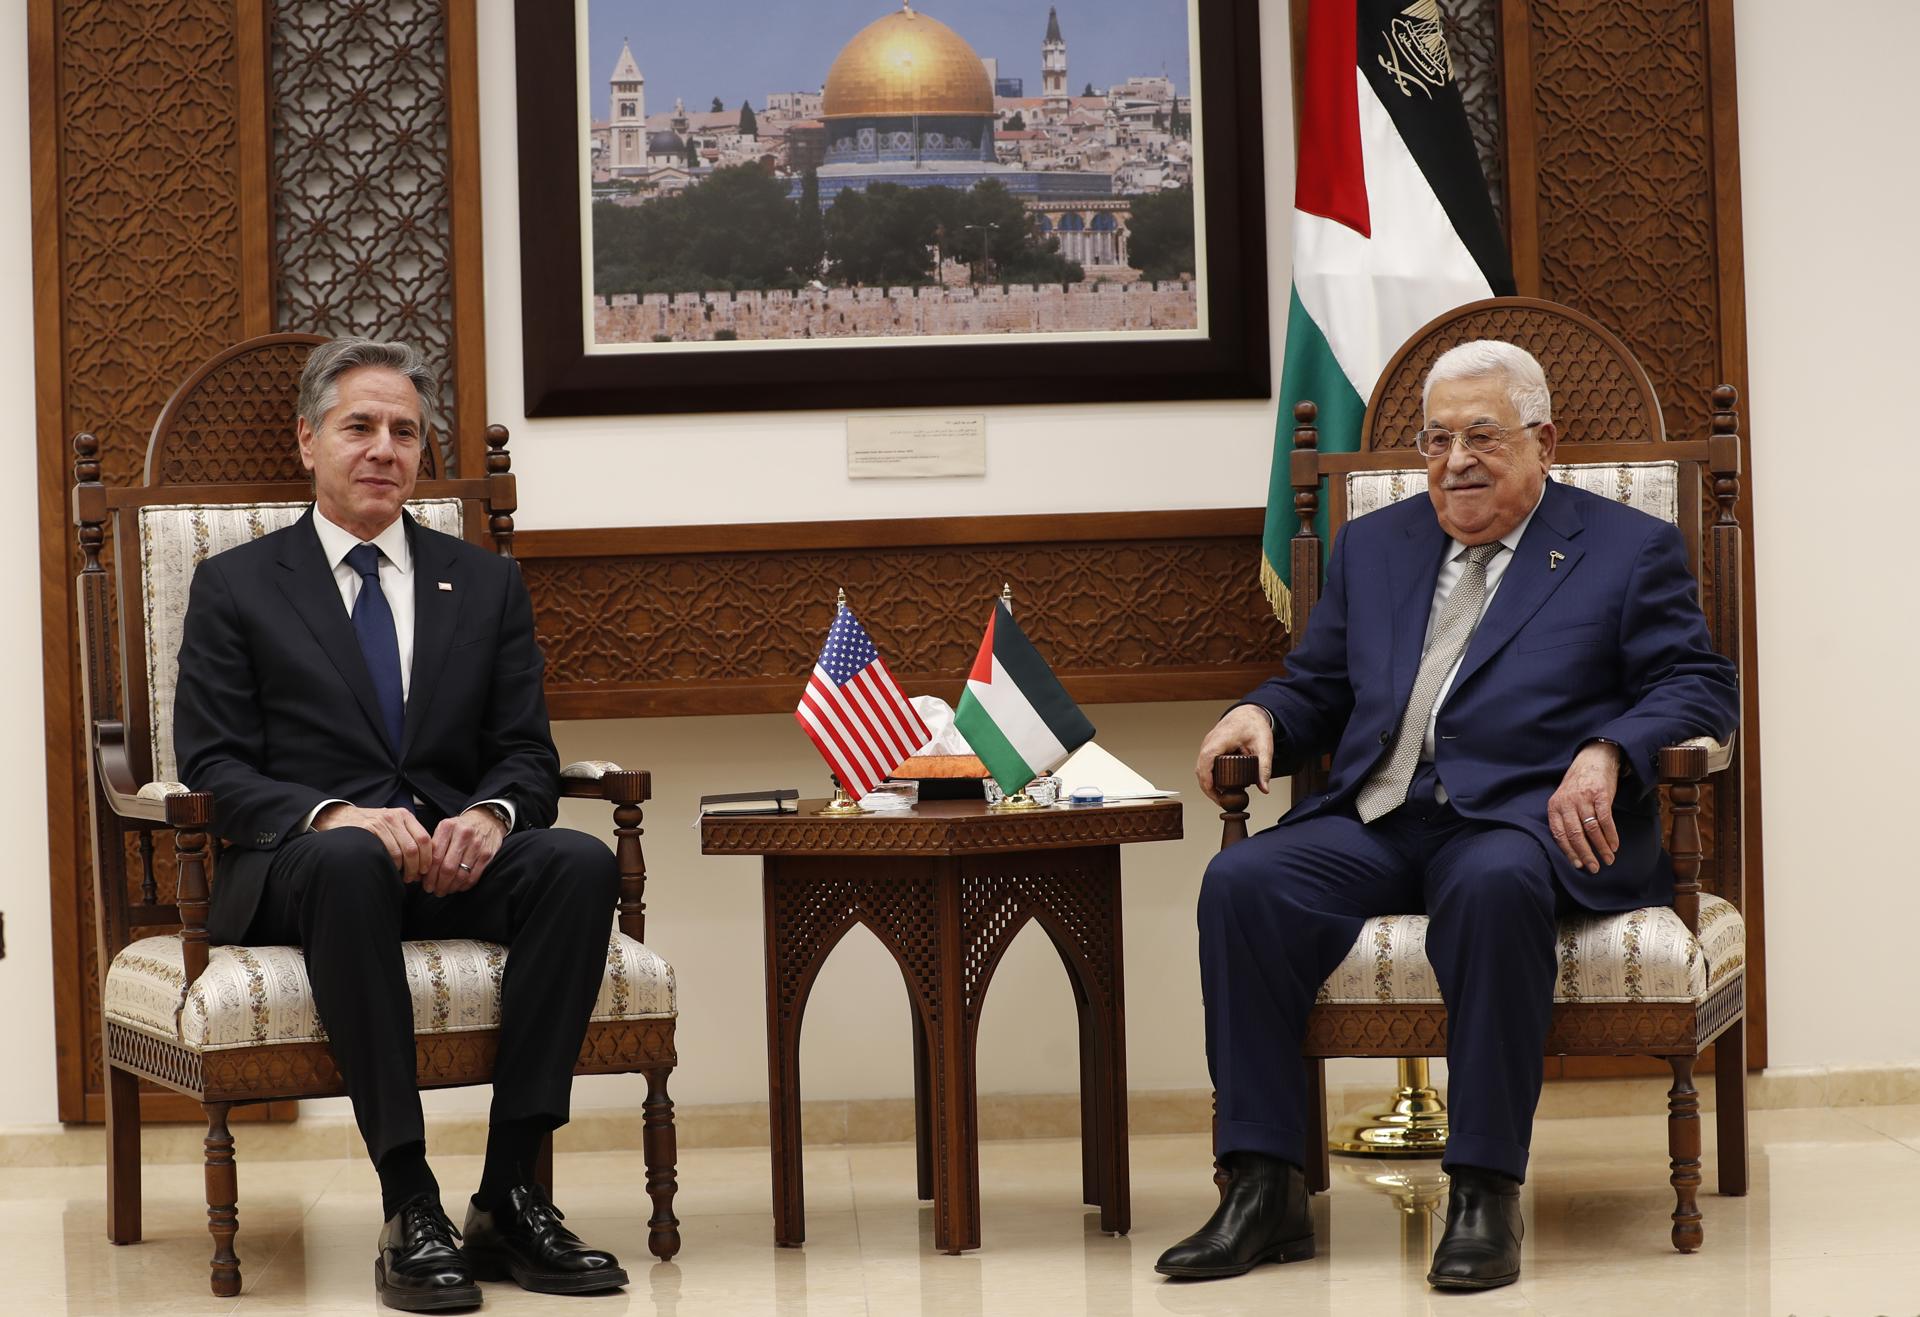 Demandan creación del Estado palestino al secretario de visita en Medio Oriente